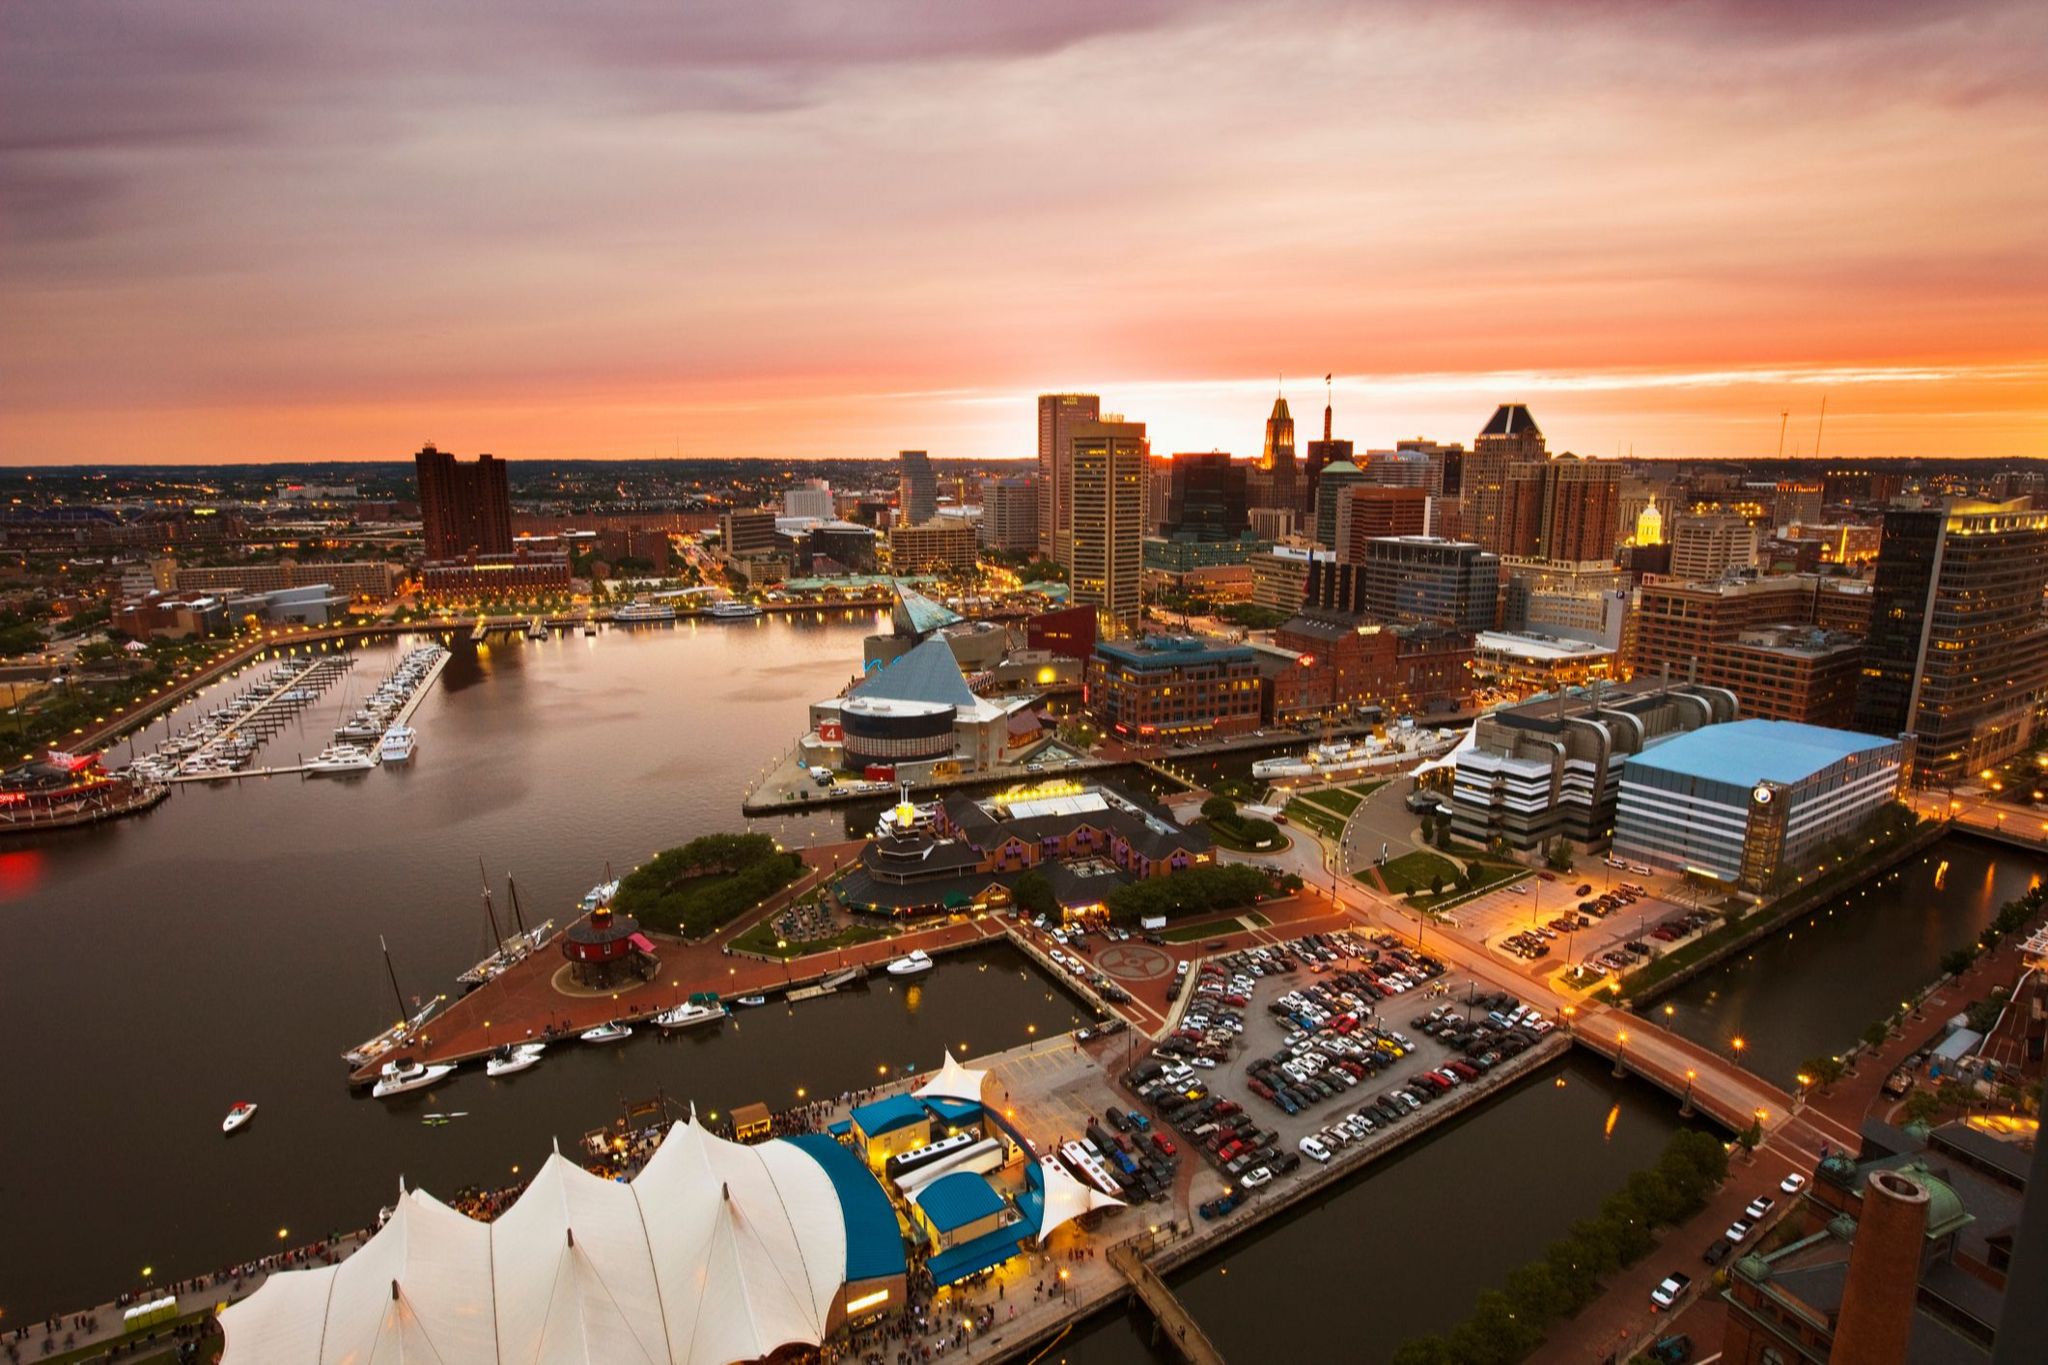 Cityscape of Baltimore